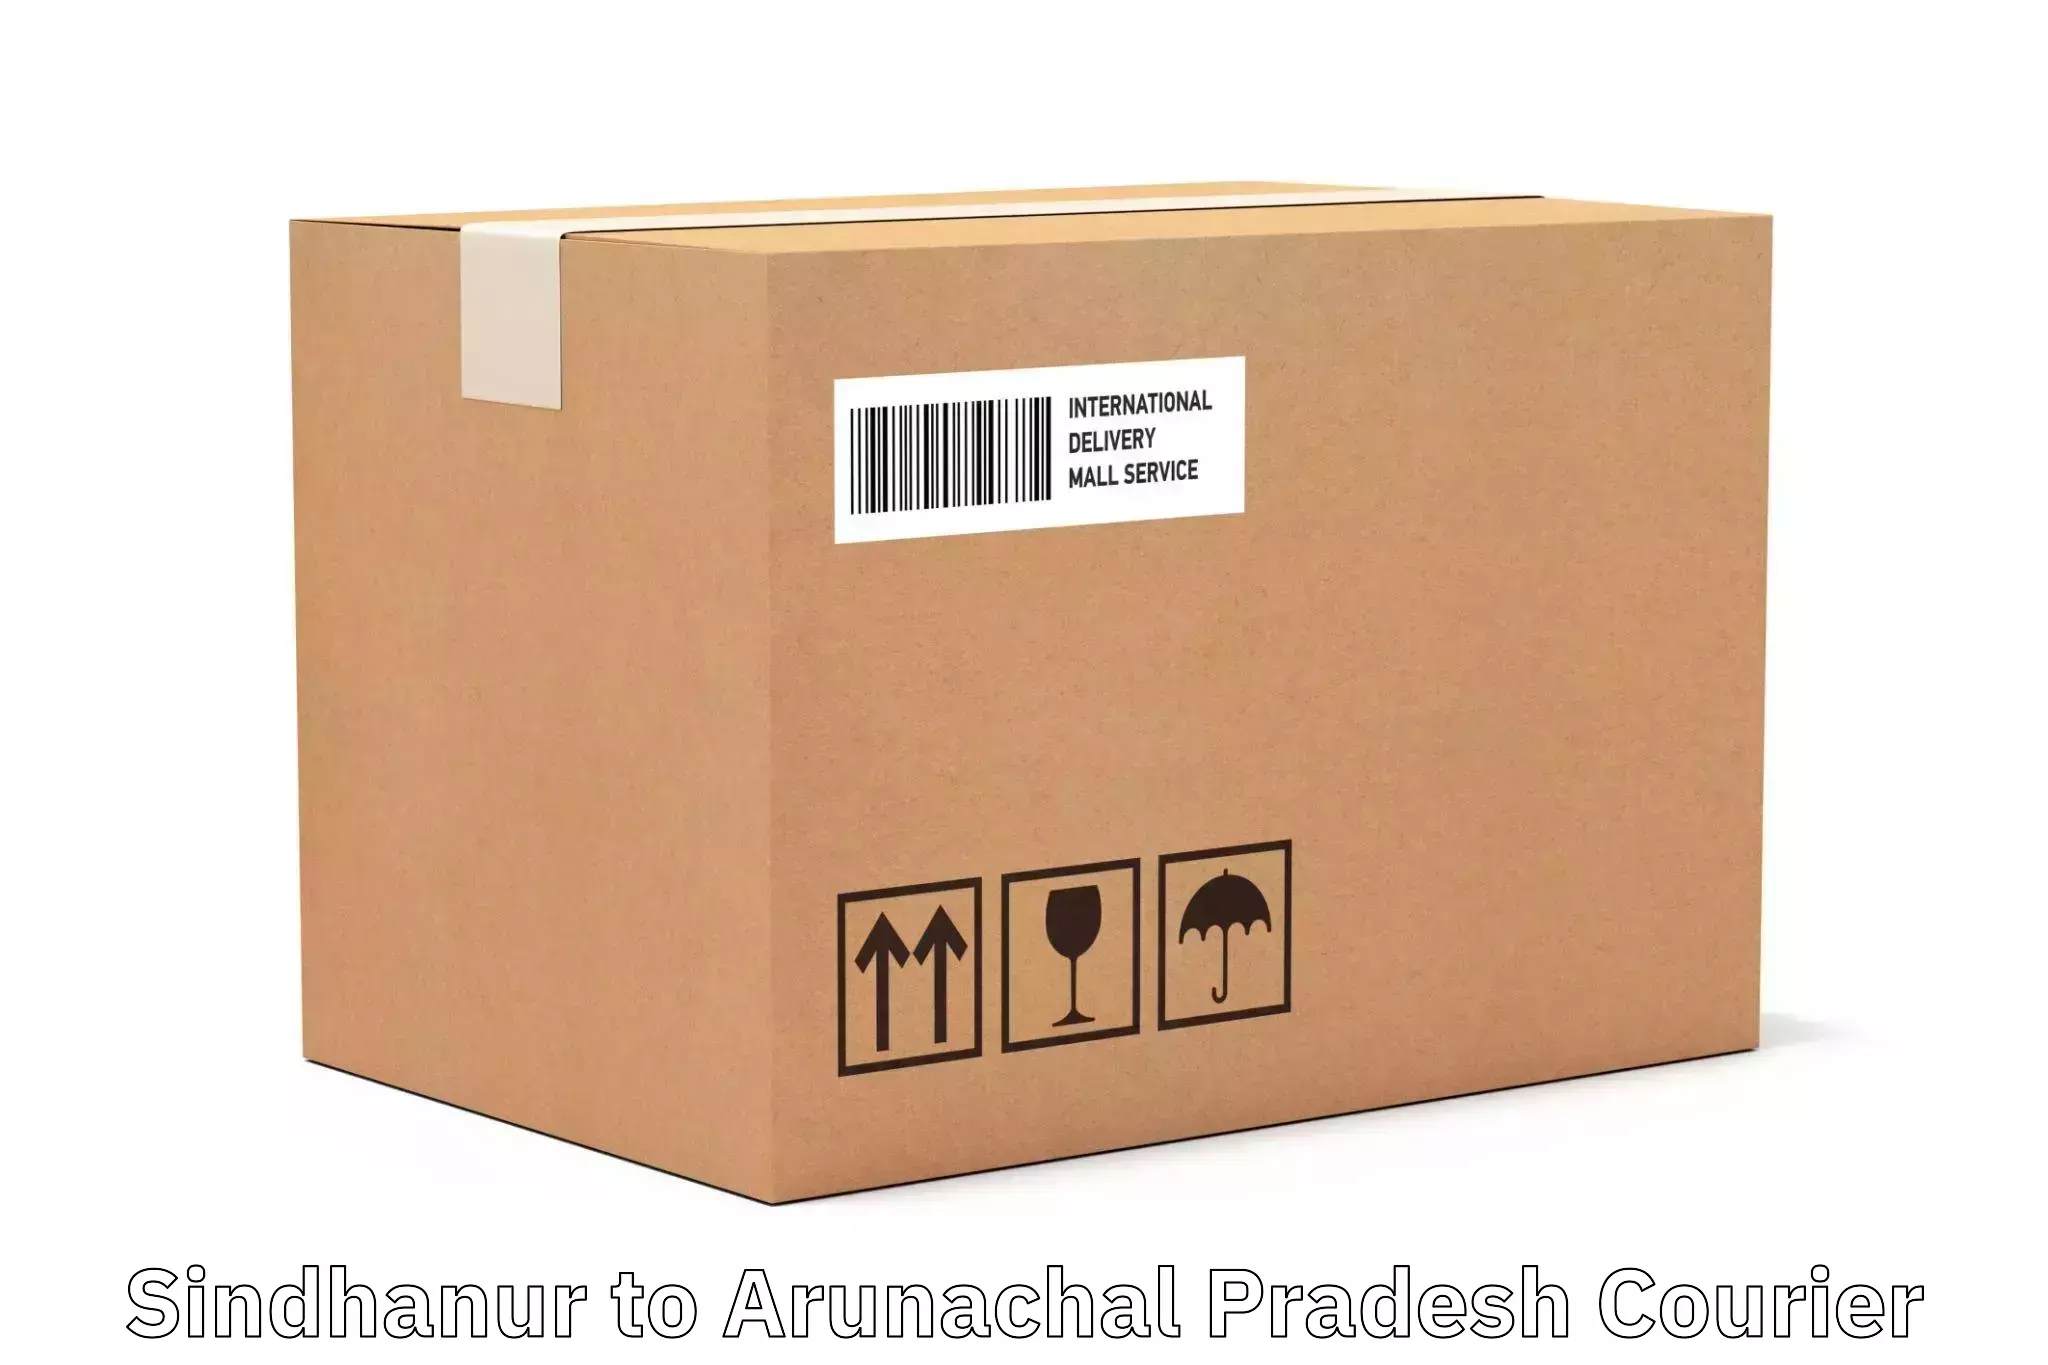 Package tracking Sindhanur to Arunachal Pradesh